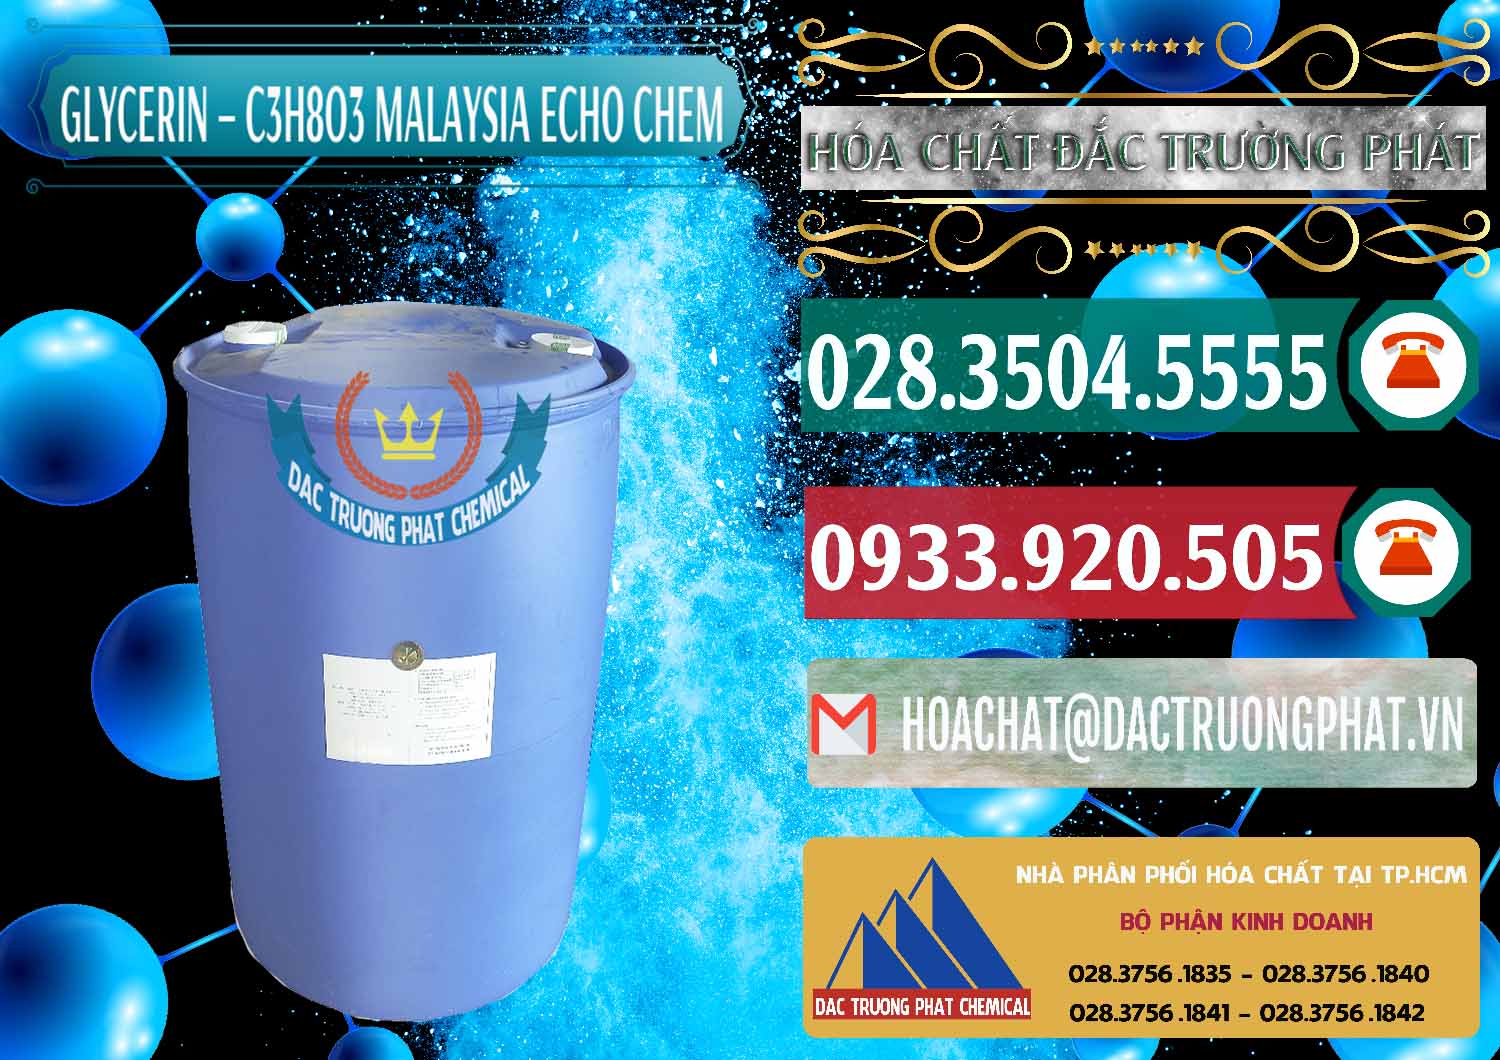 Chuyên cung cấp & bán C3H8O3 - Glycerin 99.7% Echo Chem Malaysia - 0273 - Cung cấp - phân phối hóa chất tại TP.HCM - muabanhoachat.vn